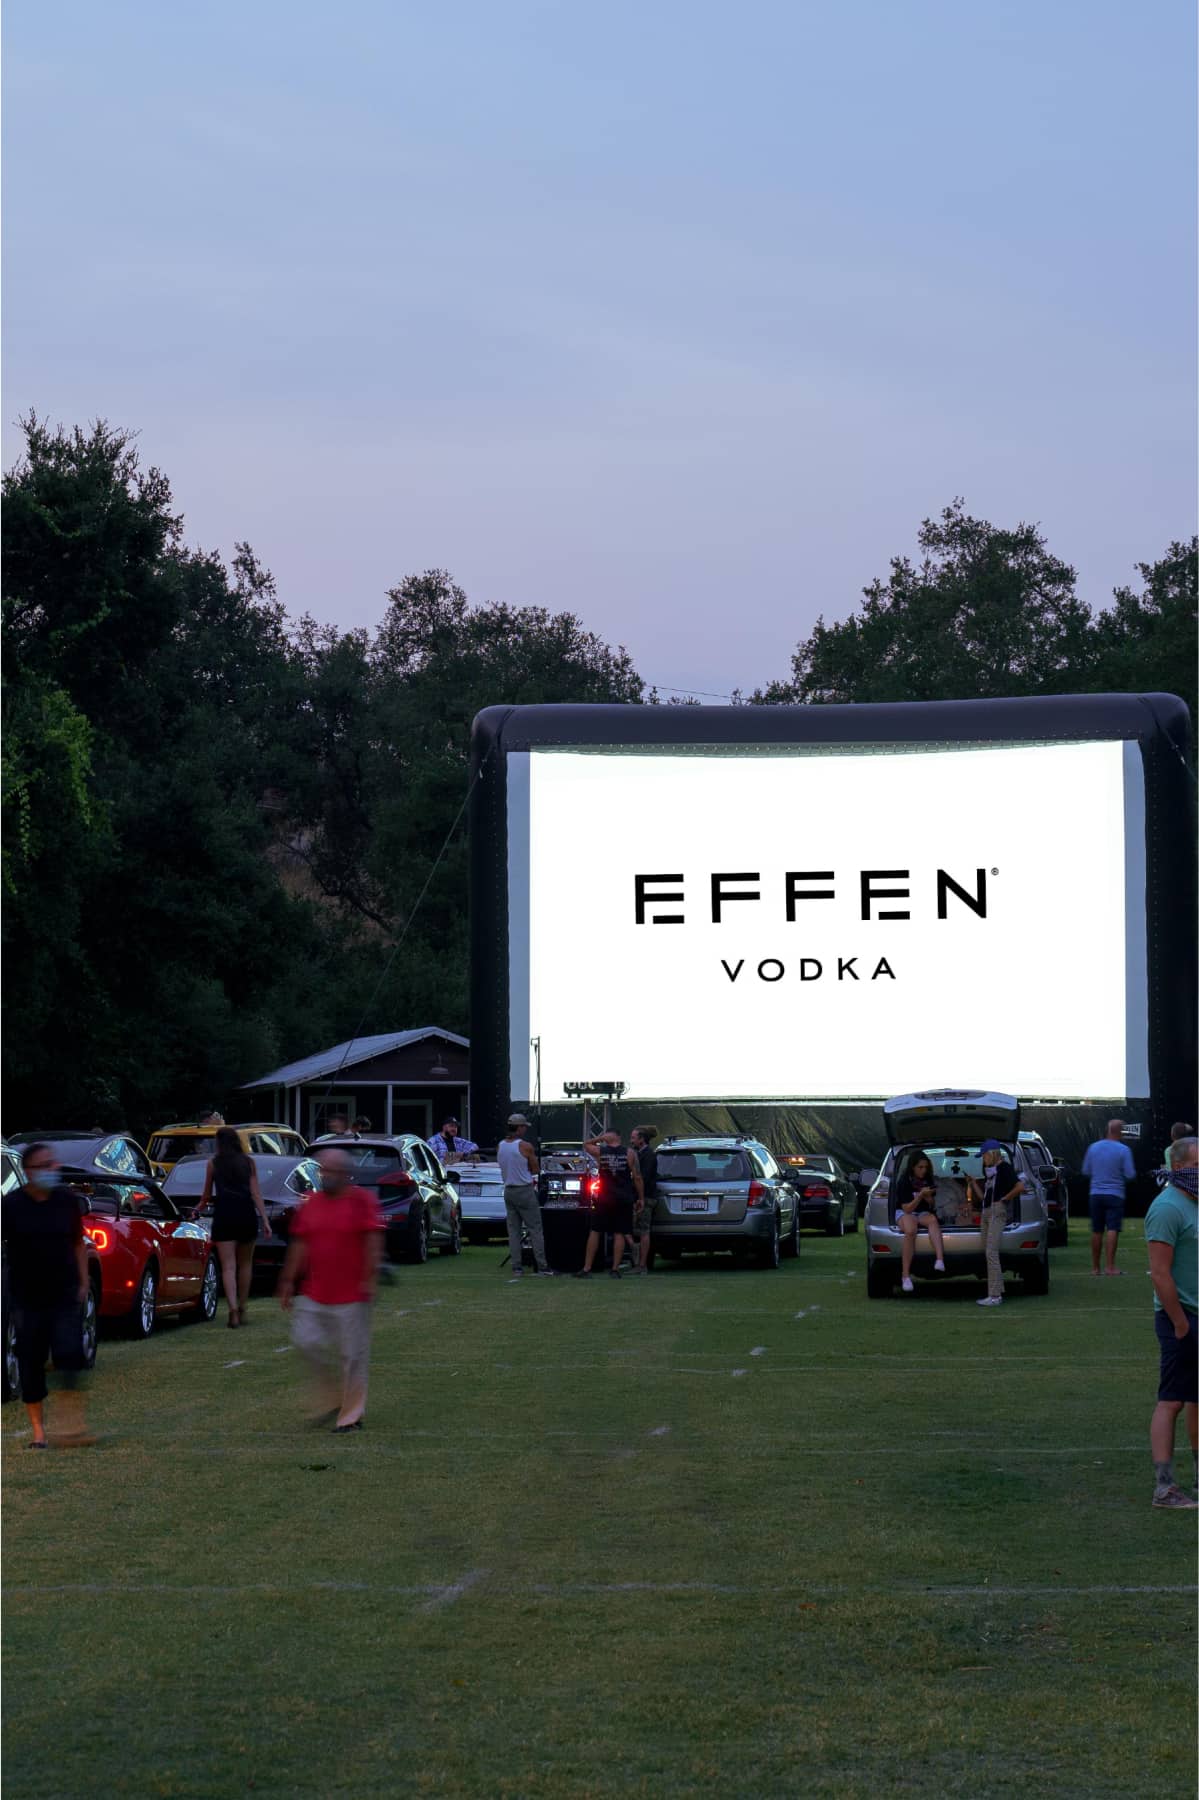 Cinema advertisement of EFFEN Vodka.